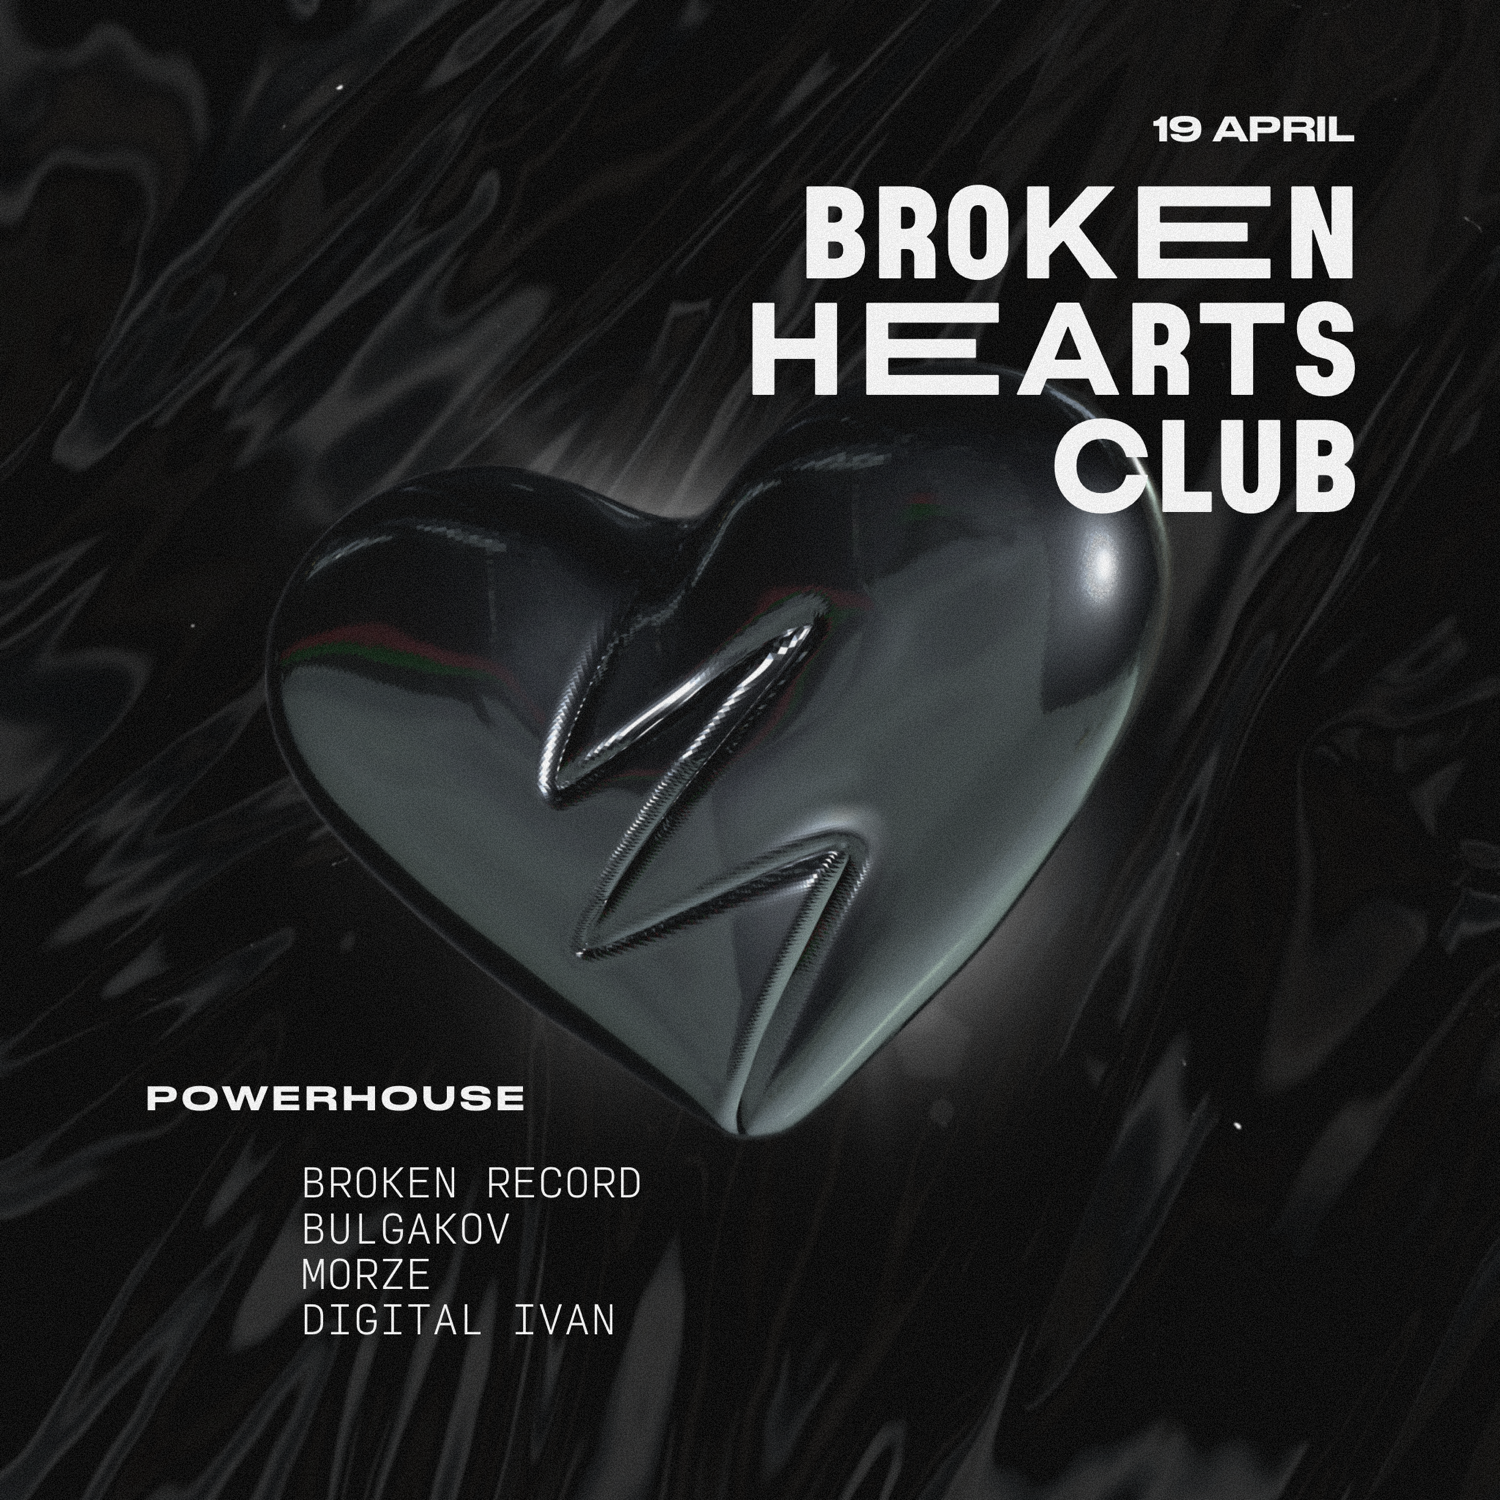 Broken Hearts Club - フライヤー表